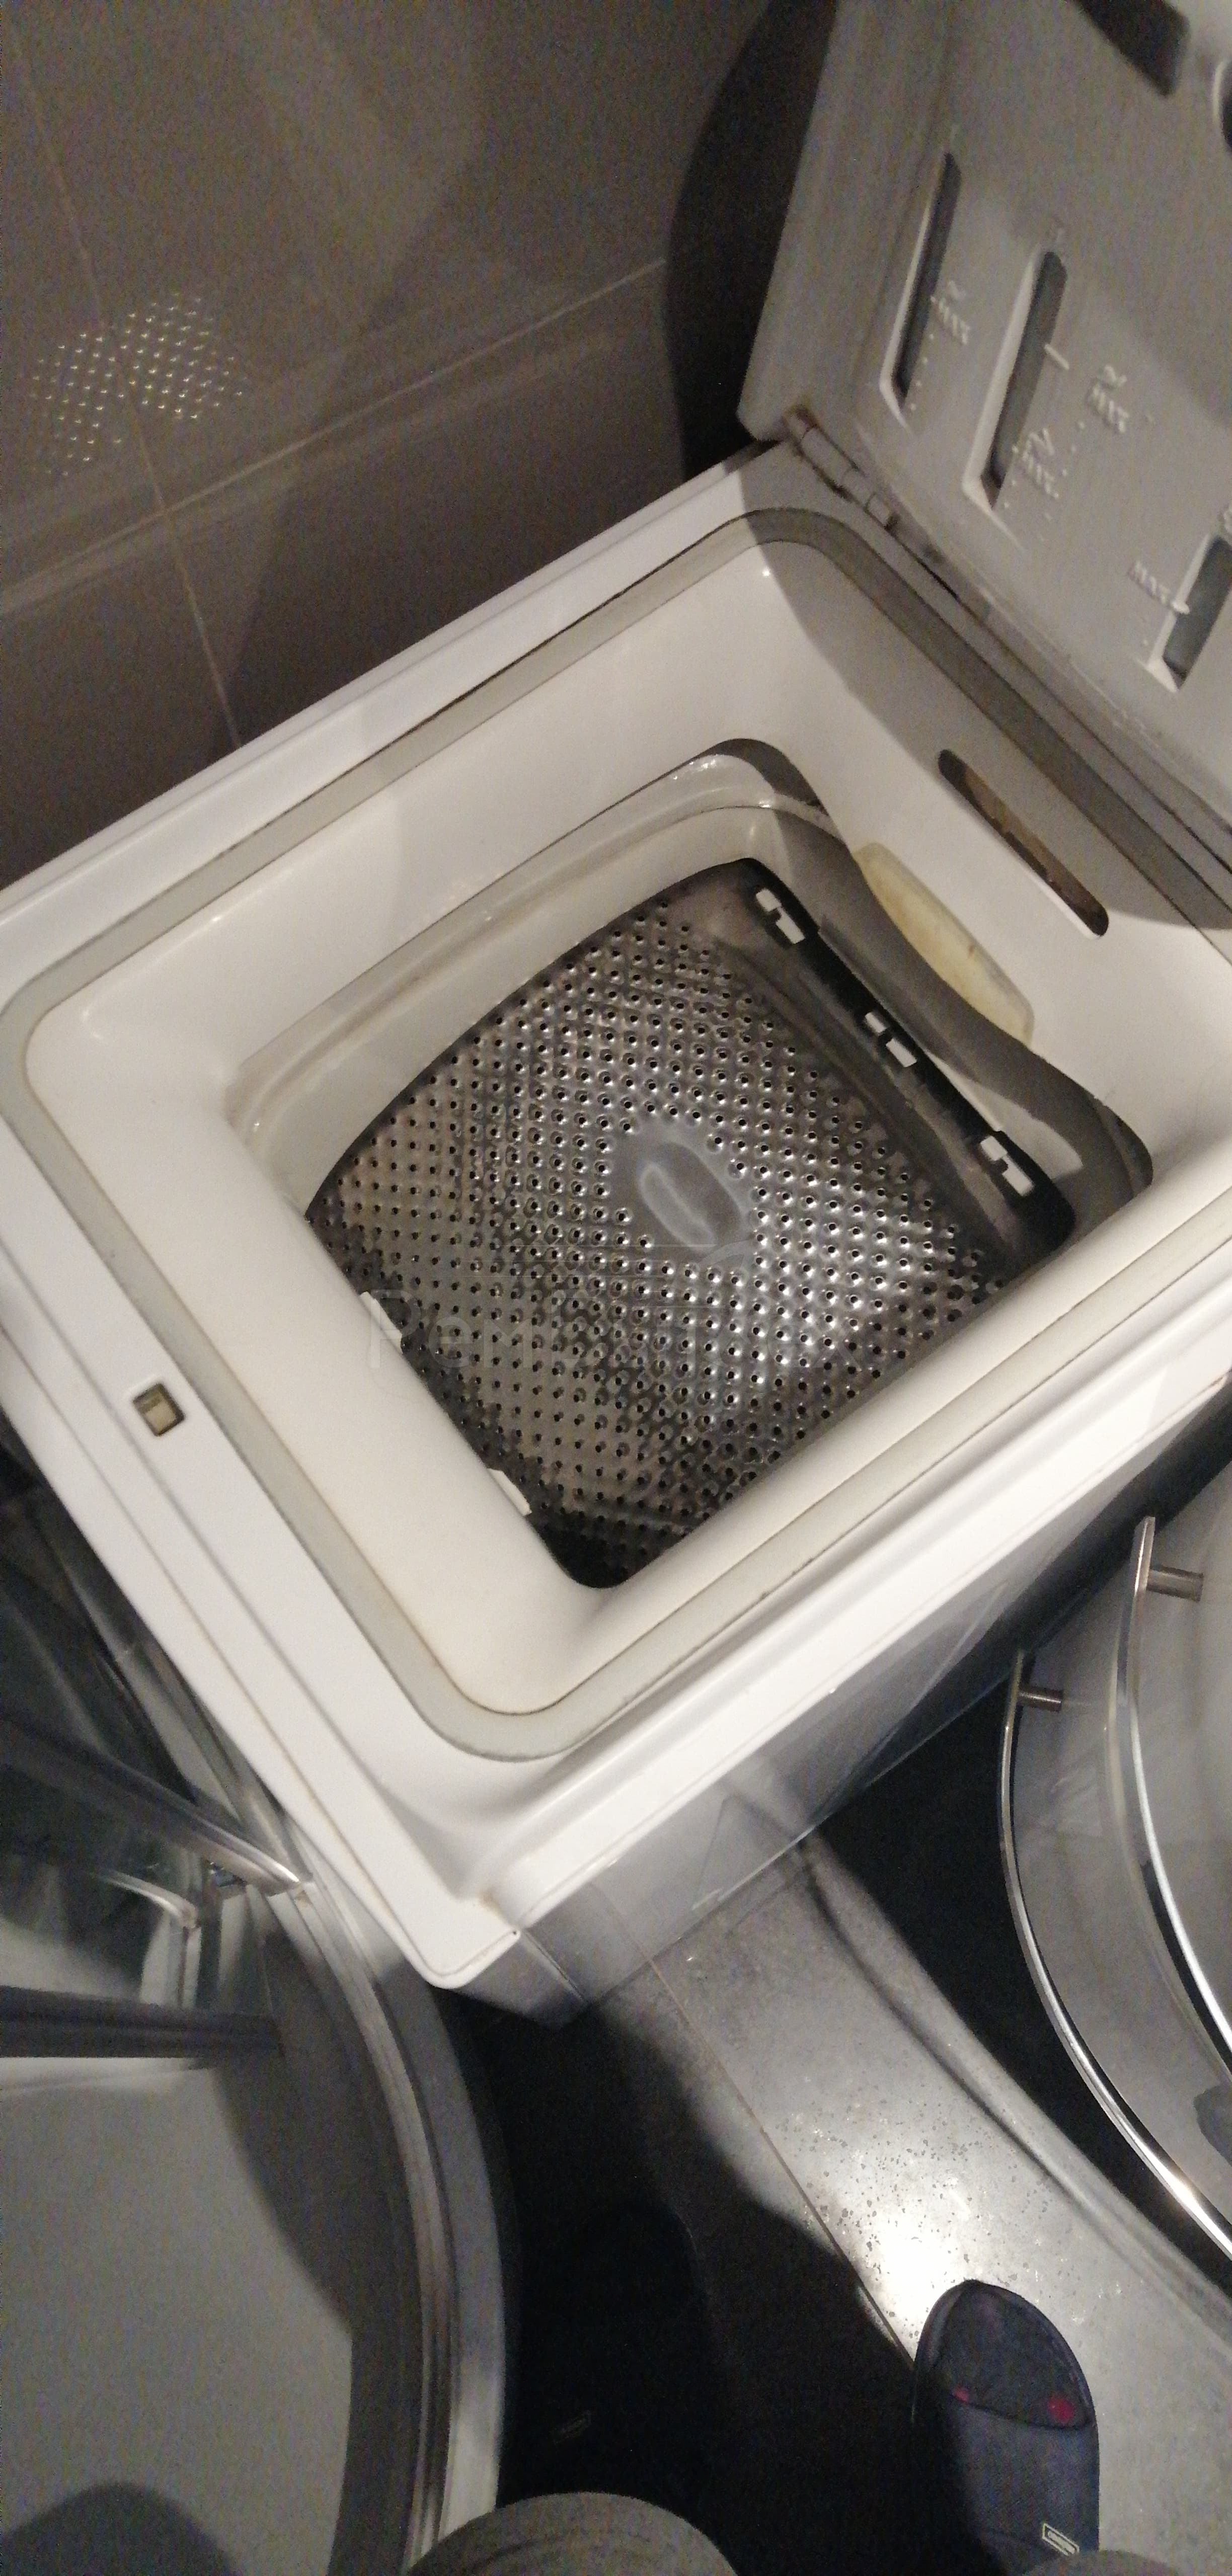 Что делать, если не открывается дверца стиральной машины?